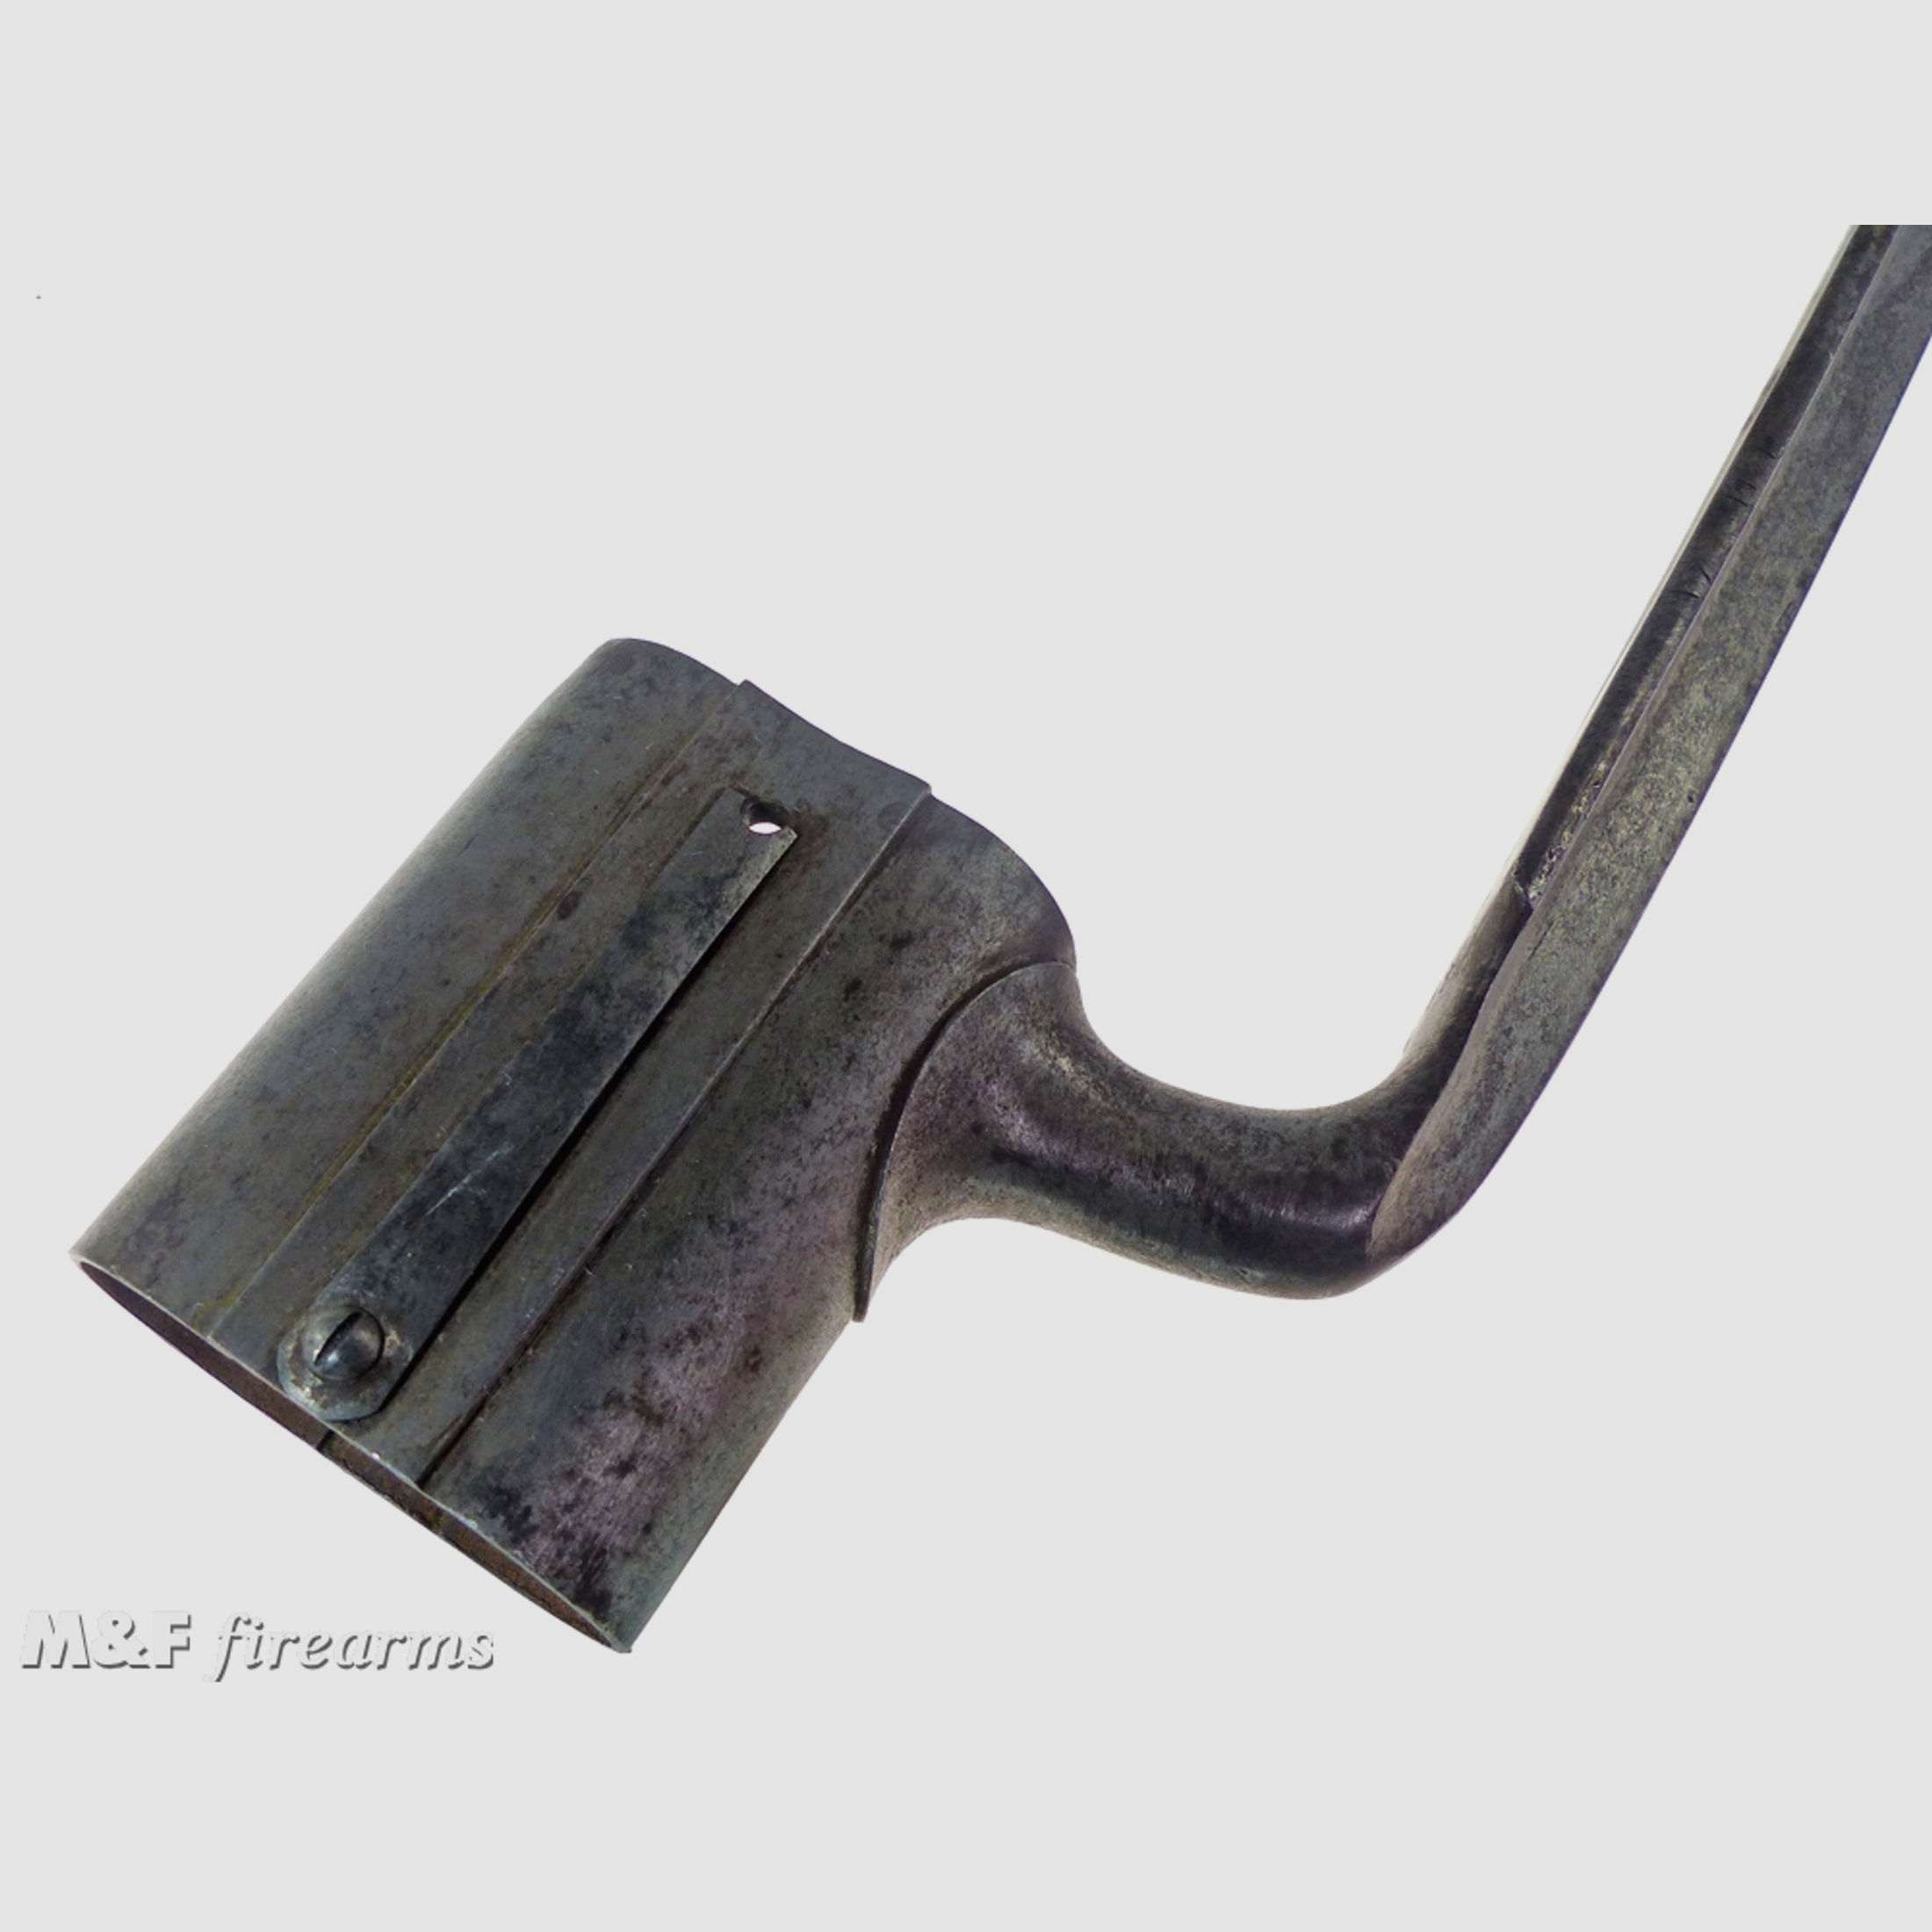 Seltenes Doppellauf Tüllen Bajonett (Dillenbajonett) für Schrotflinte (Querflinte) 19. Jahrhundert Hersteller unbekannt